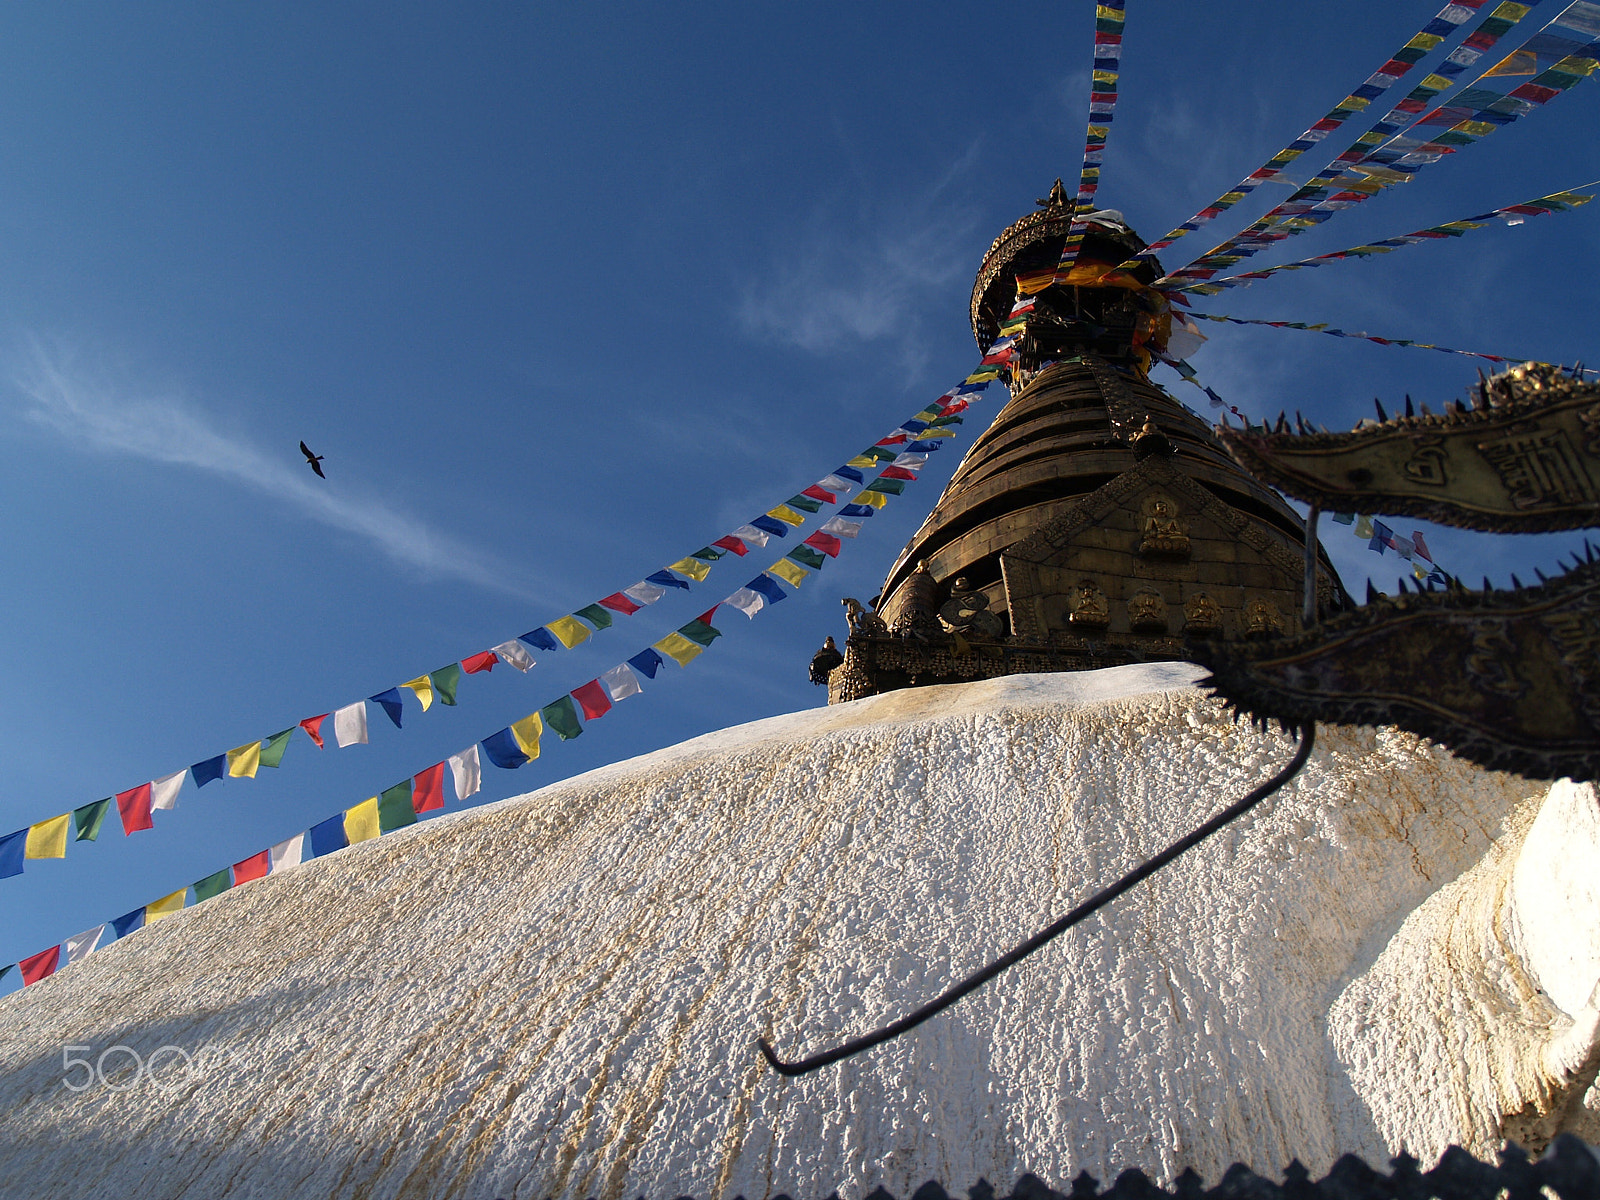 Olympus Zuiko Digital 14-45mm F3.5-5.6 sample photo. Swayambhunath photography